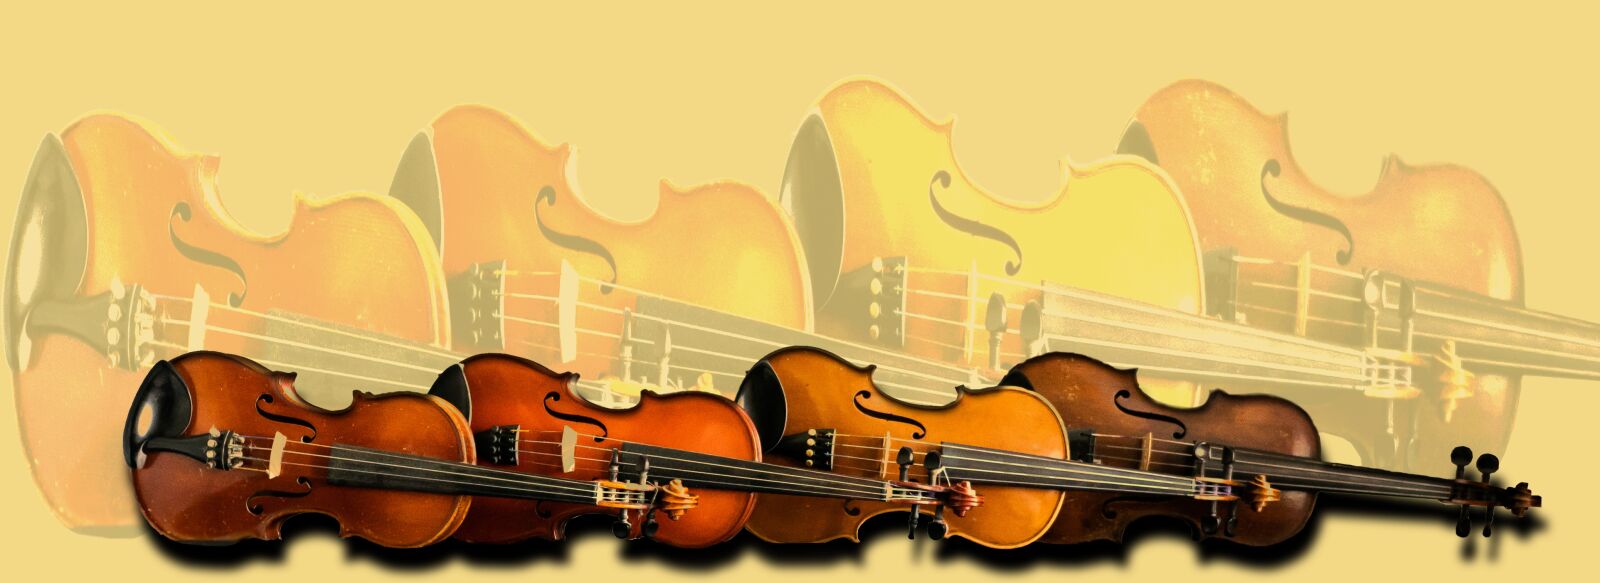 LEICA DG SUMMILUX 15/F1.7 sample photo. Violin, viola, quartet photography